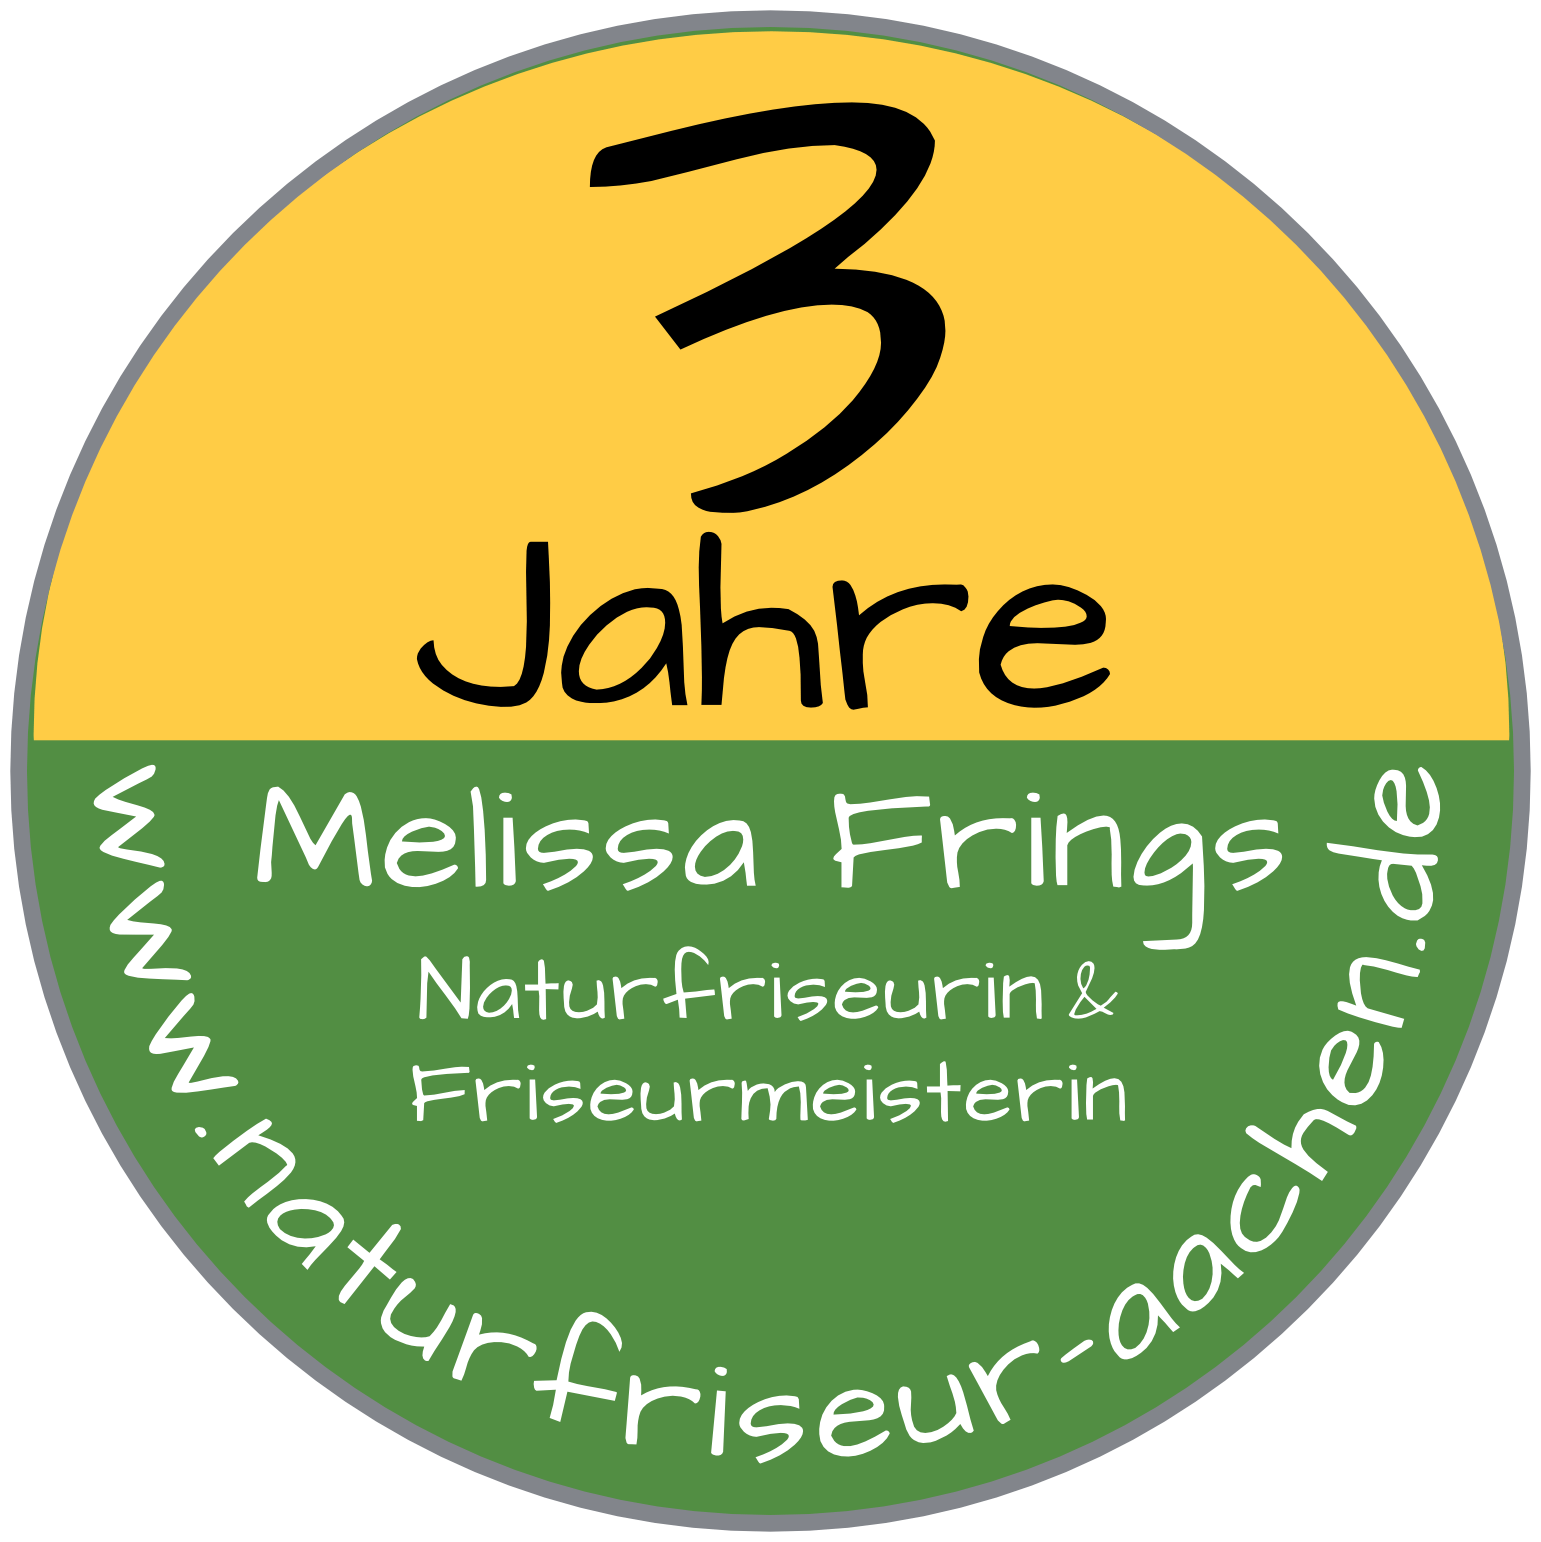 3 Jahre Melissa Frings Naturfriseurin & Friseurmeisterin www.naturfriseur-aachen.de